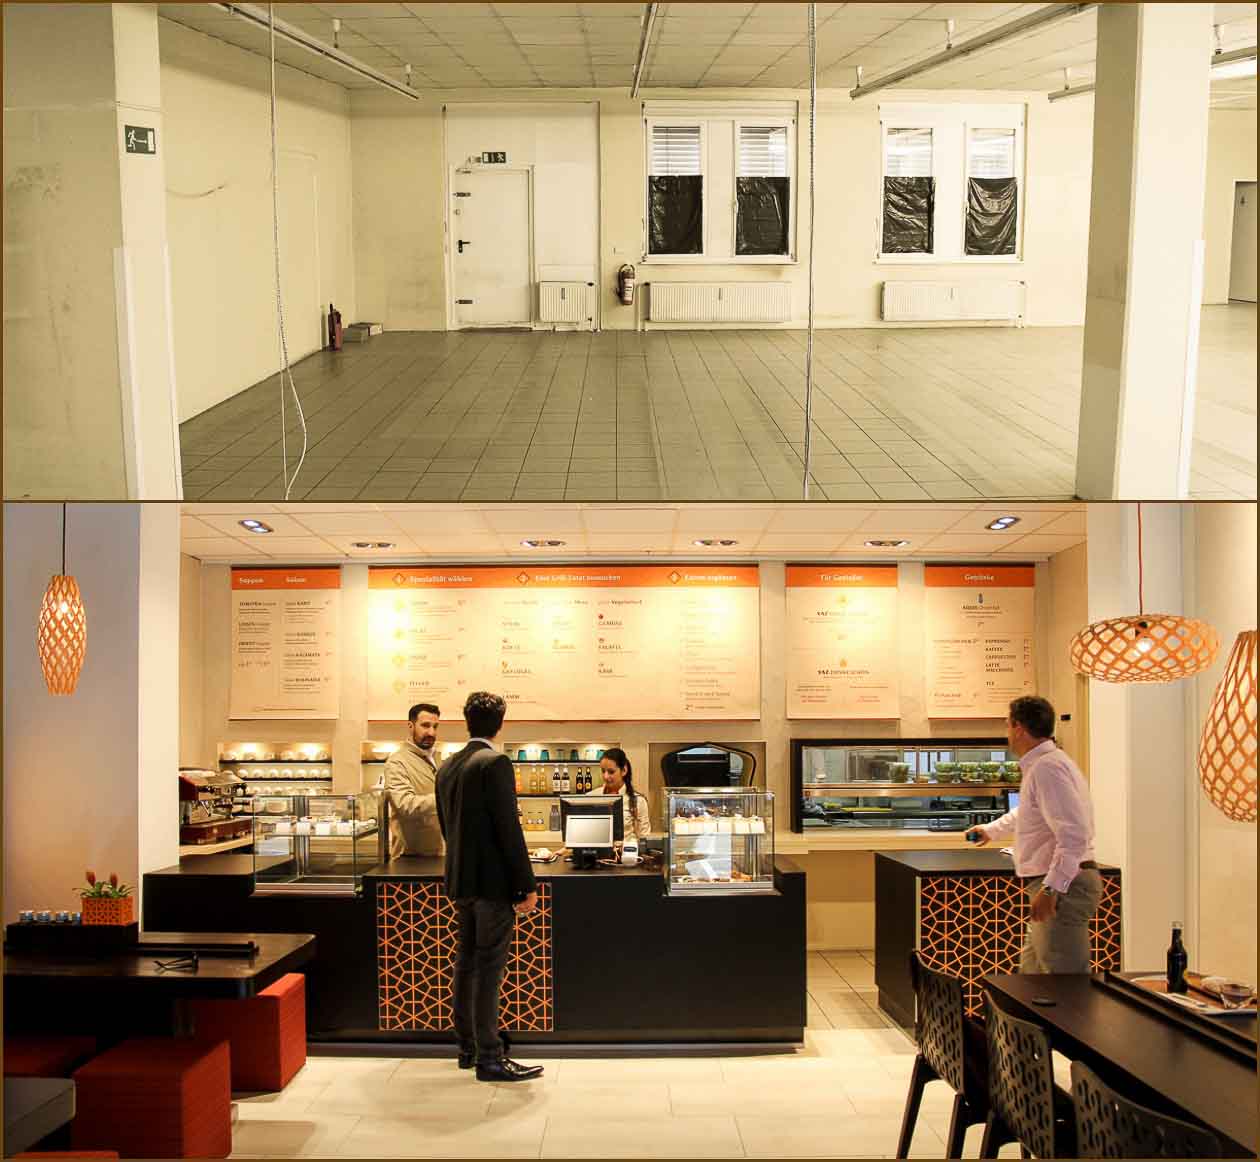 Rikiki Interior Design: Yaz Offices & Concept Restaurant/4,265